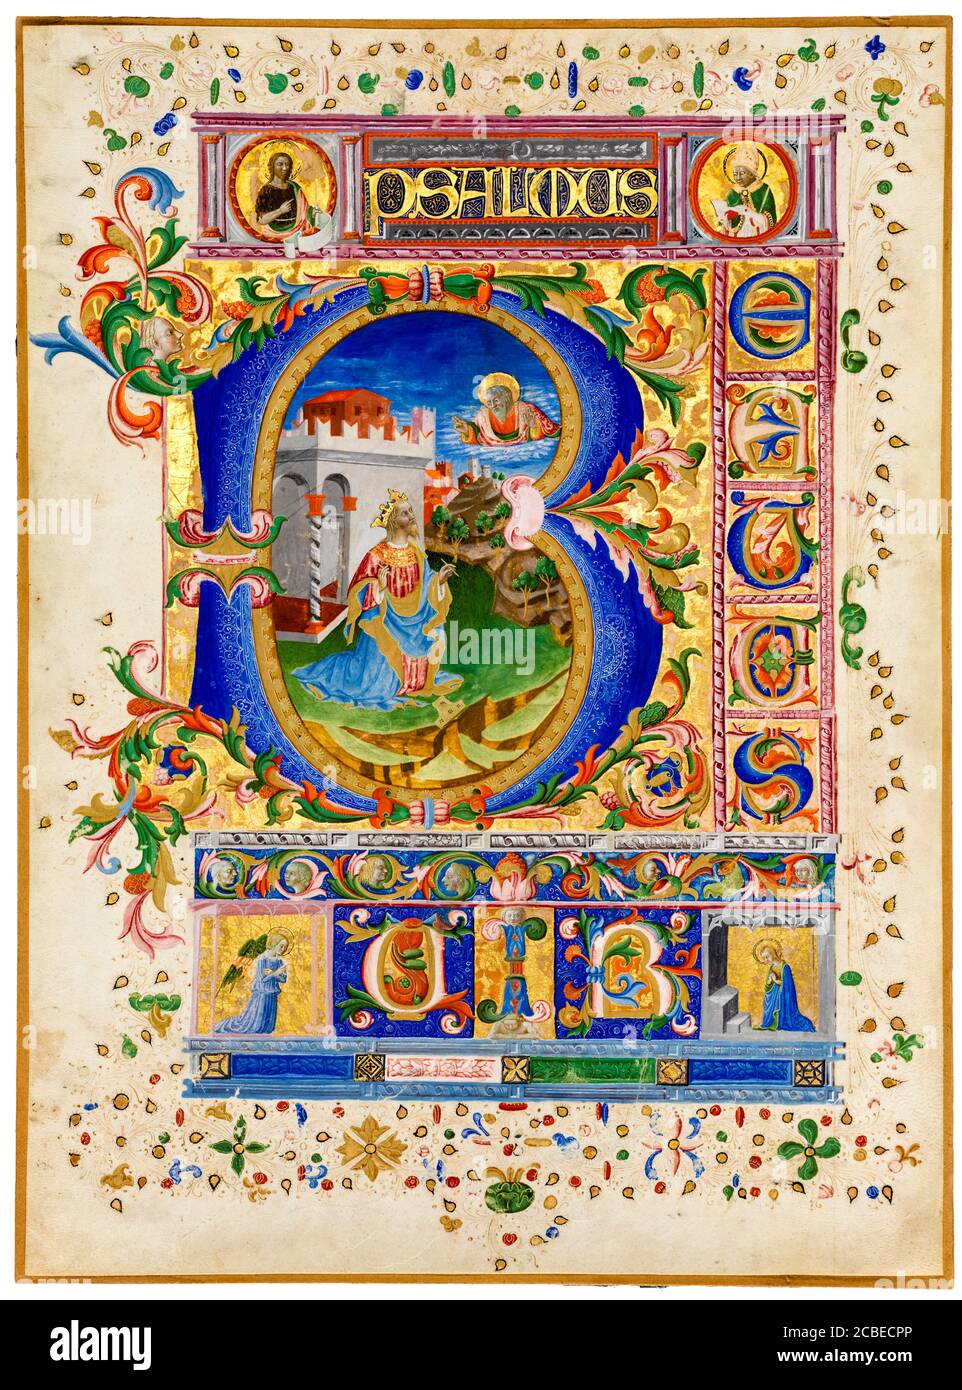 Blatt aus einem Psalter aus dem 15. Jahrhundert mit historisiertem Anfangsbuchstaben 'B', das König David zeigt, illuminierte Handschrift um 1450 Stockfoto